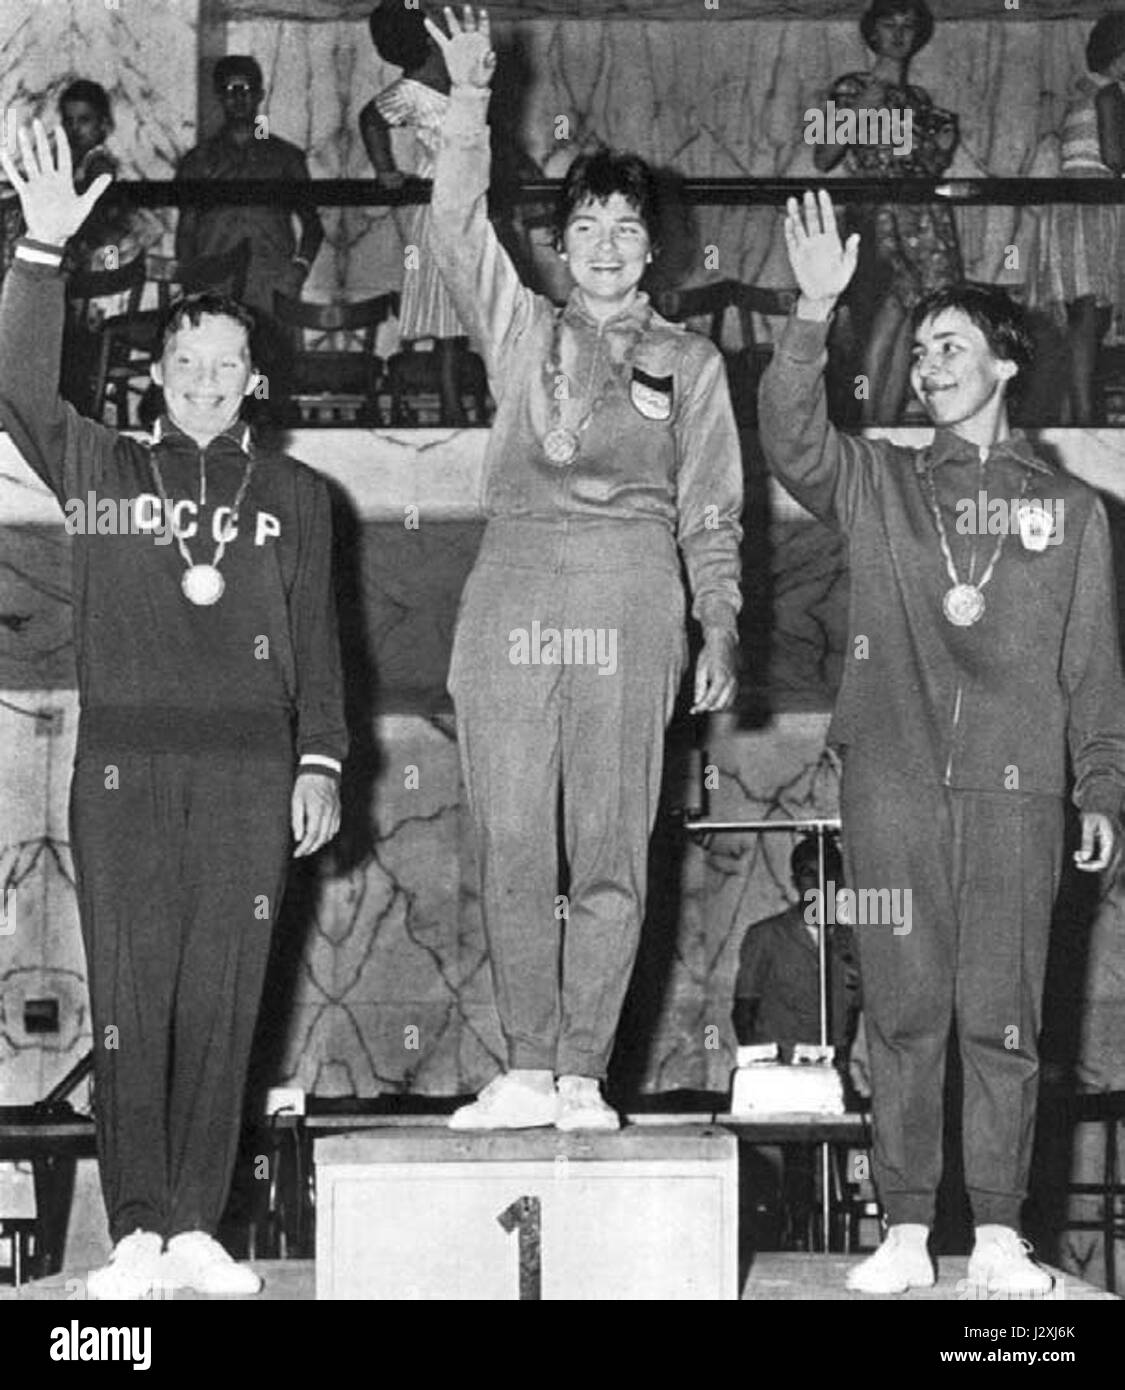 Olimpiadi 1960 podio fioretto femminile Foto de stock